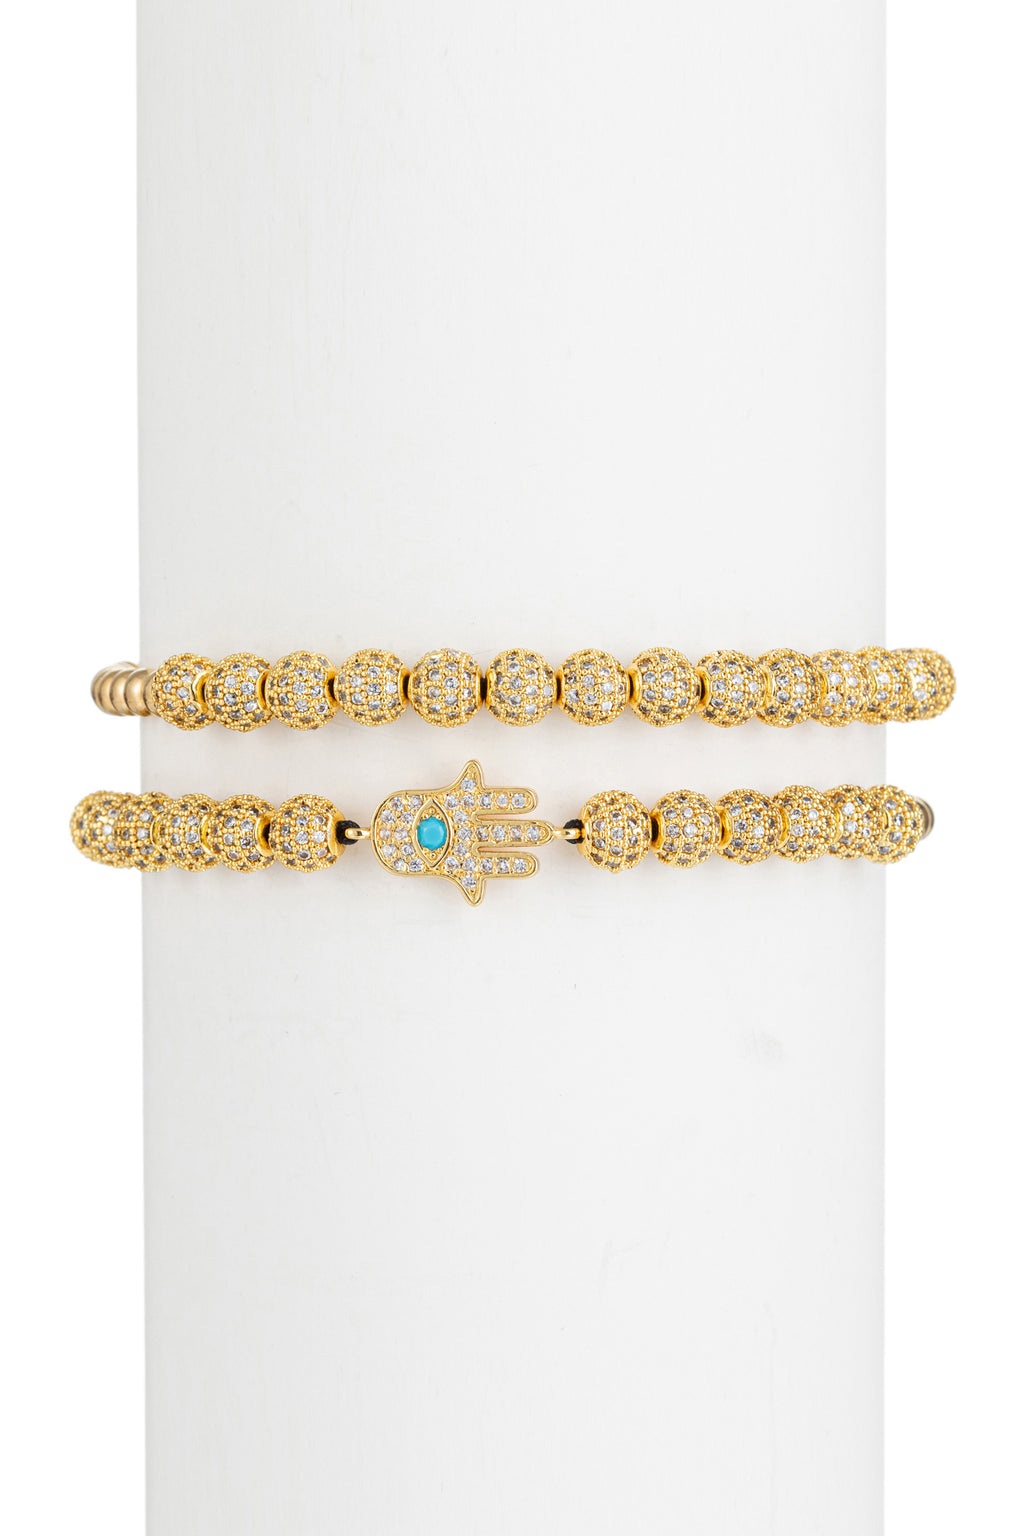 Hamsa hand titanium beaded bracelet studded with CZ brass charms.